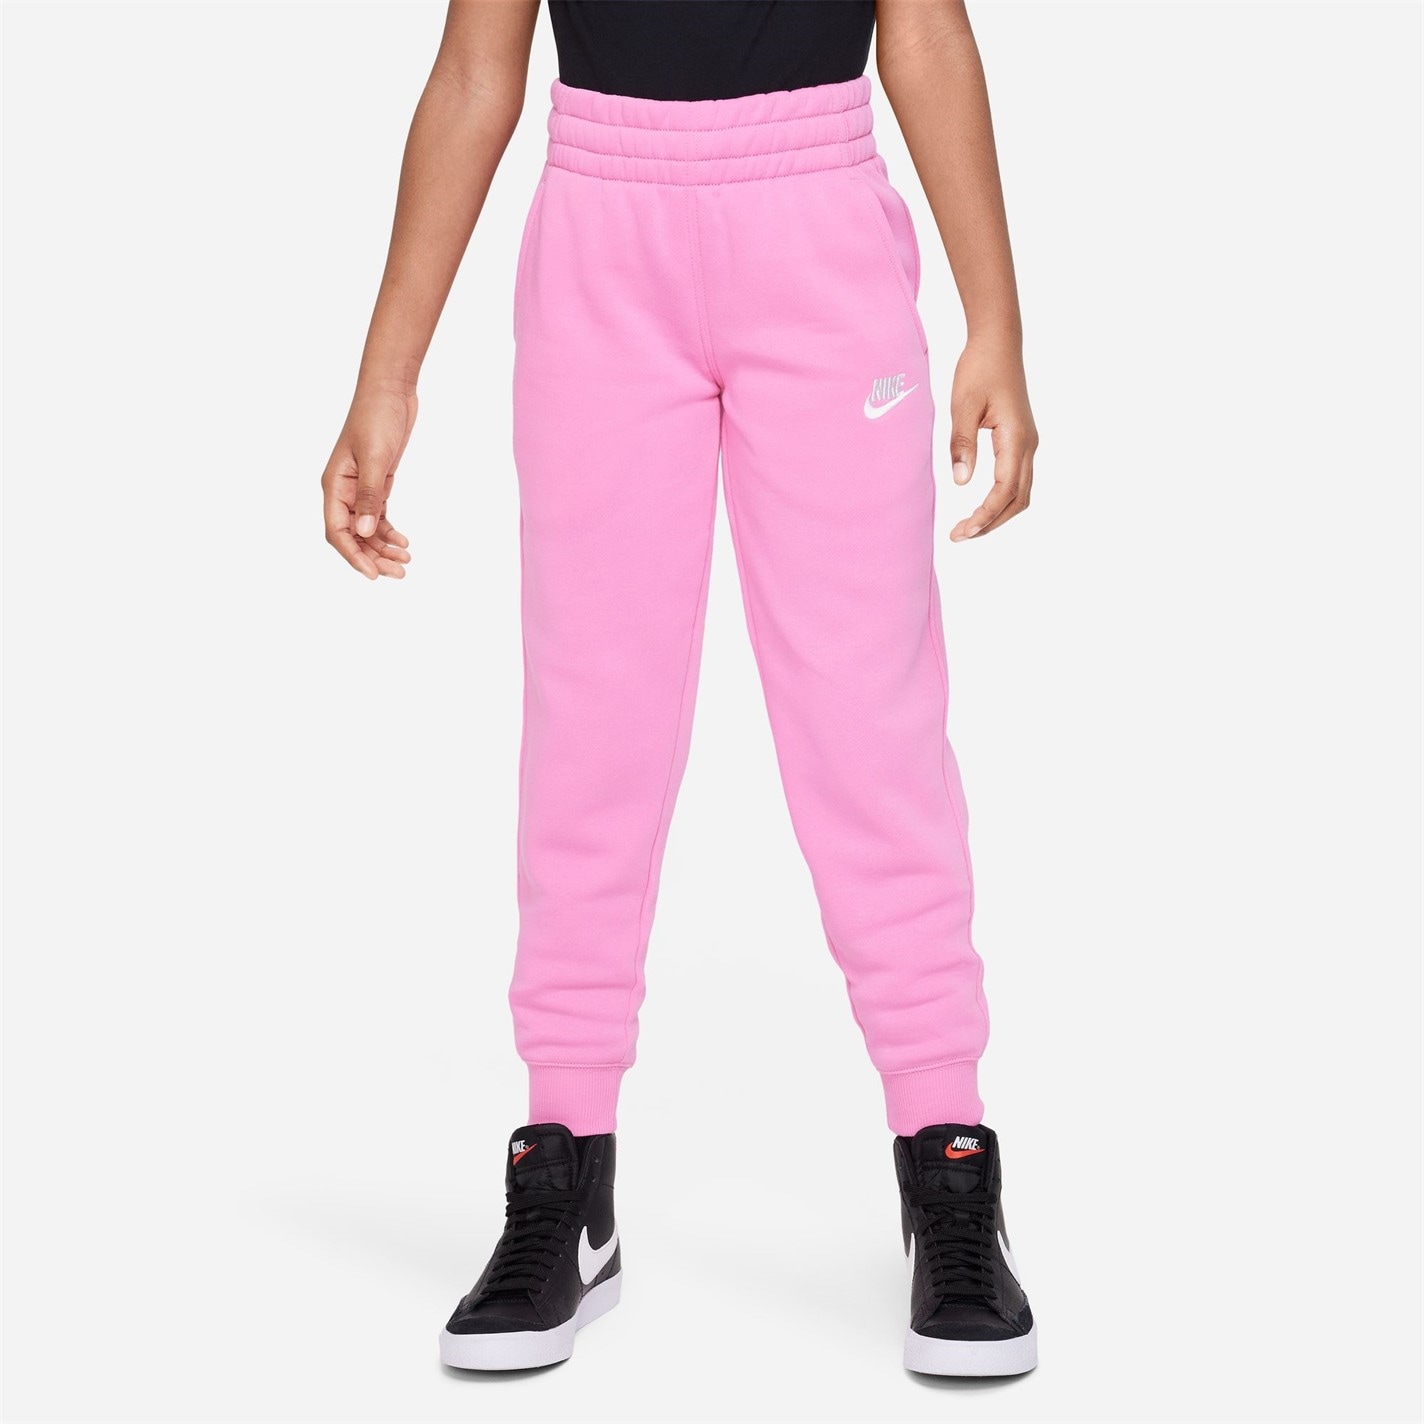 Trening Nike Sportswear pentru fetite roz